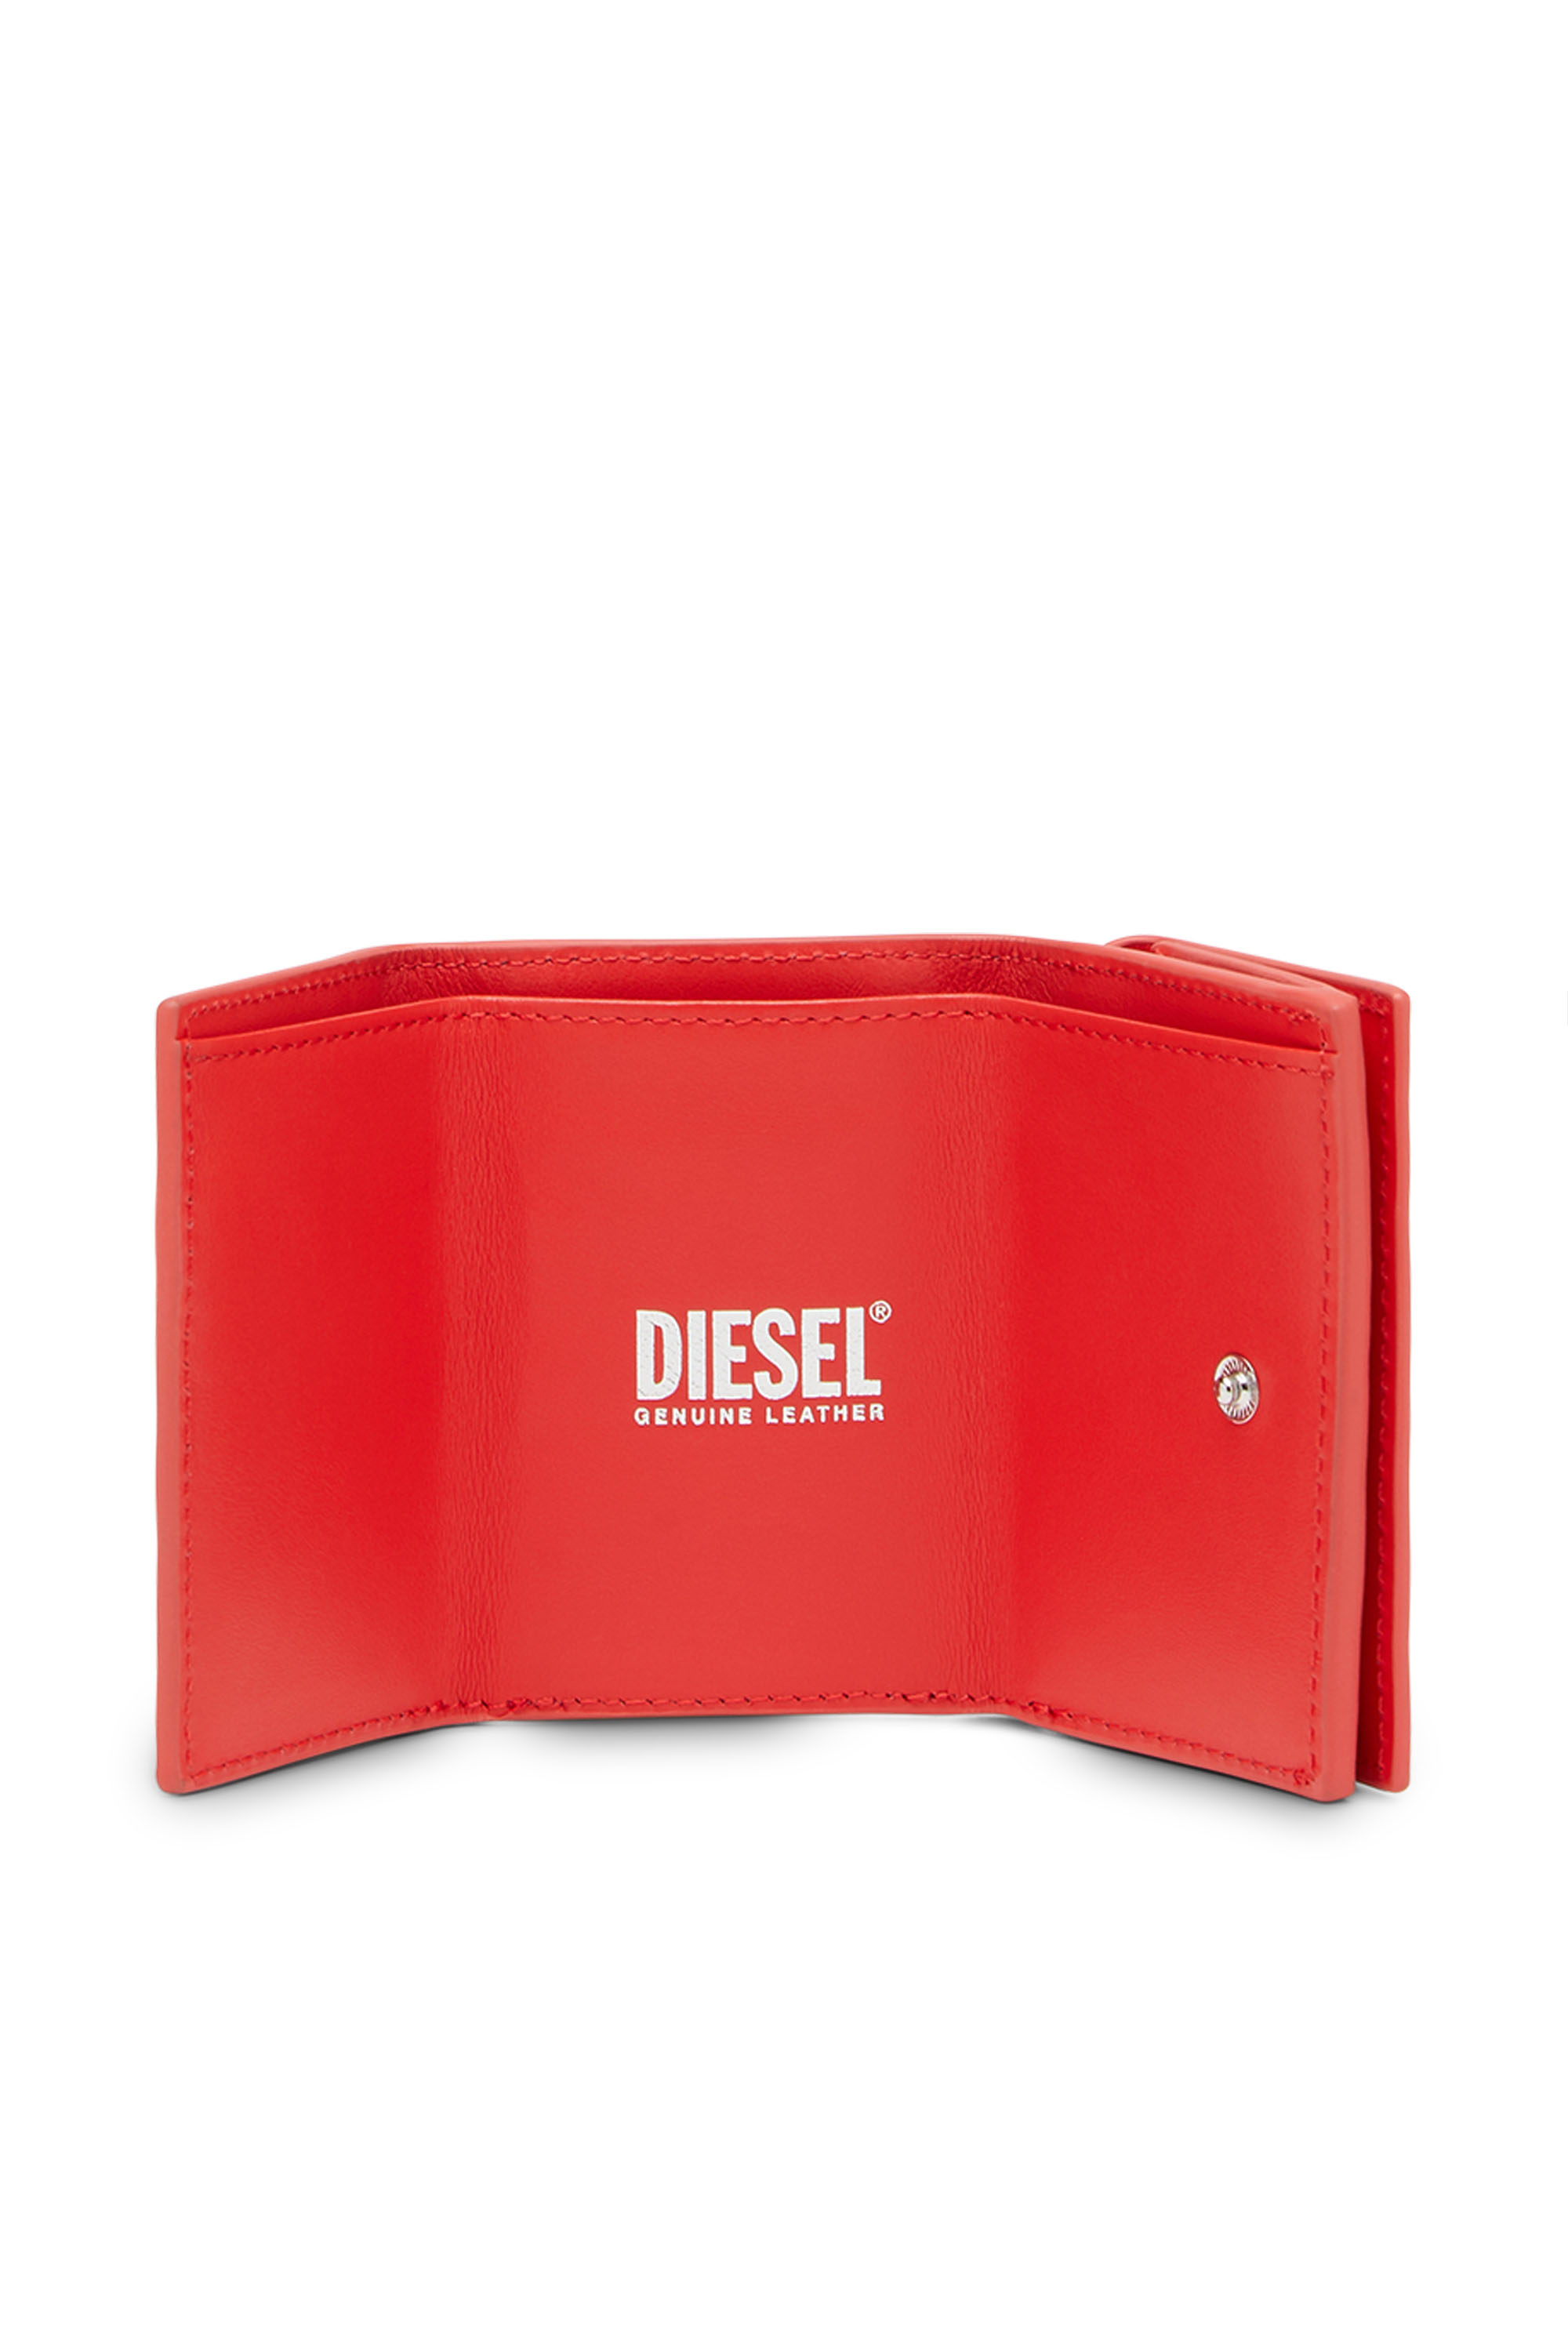 Diesel - LORETTINA, Rojo - Image 3